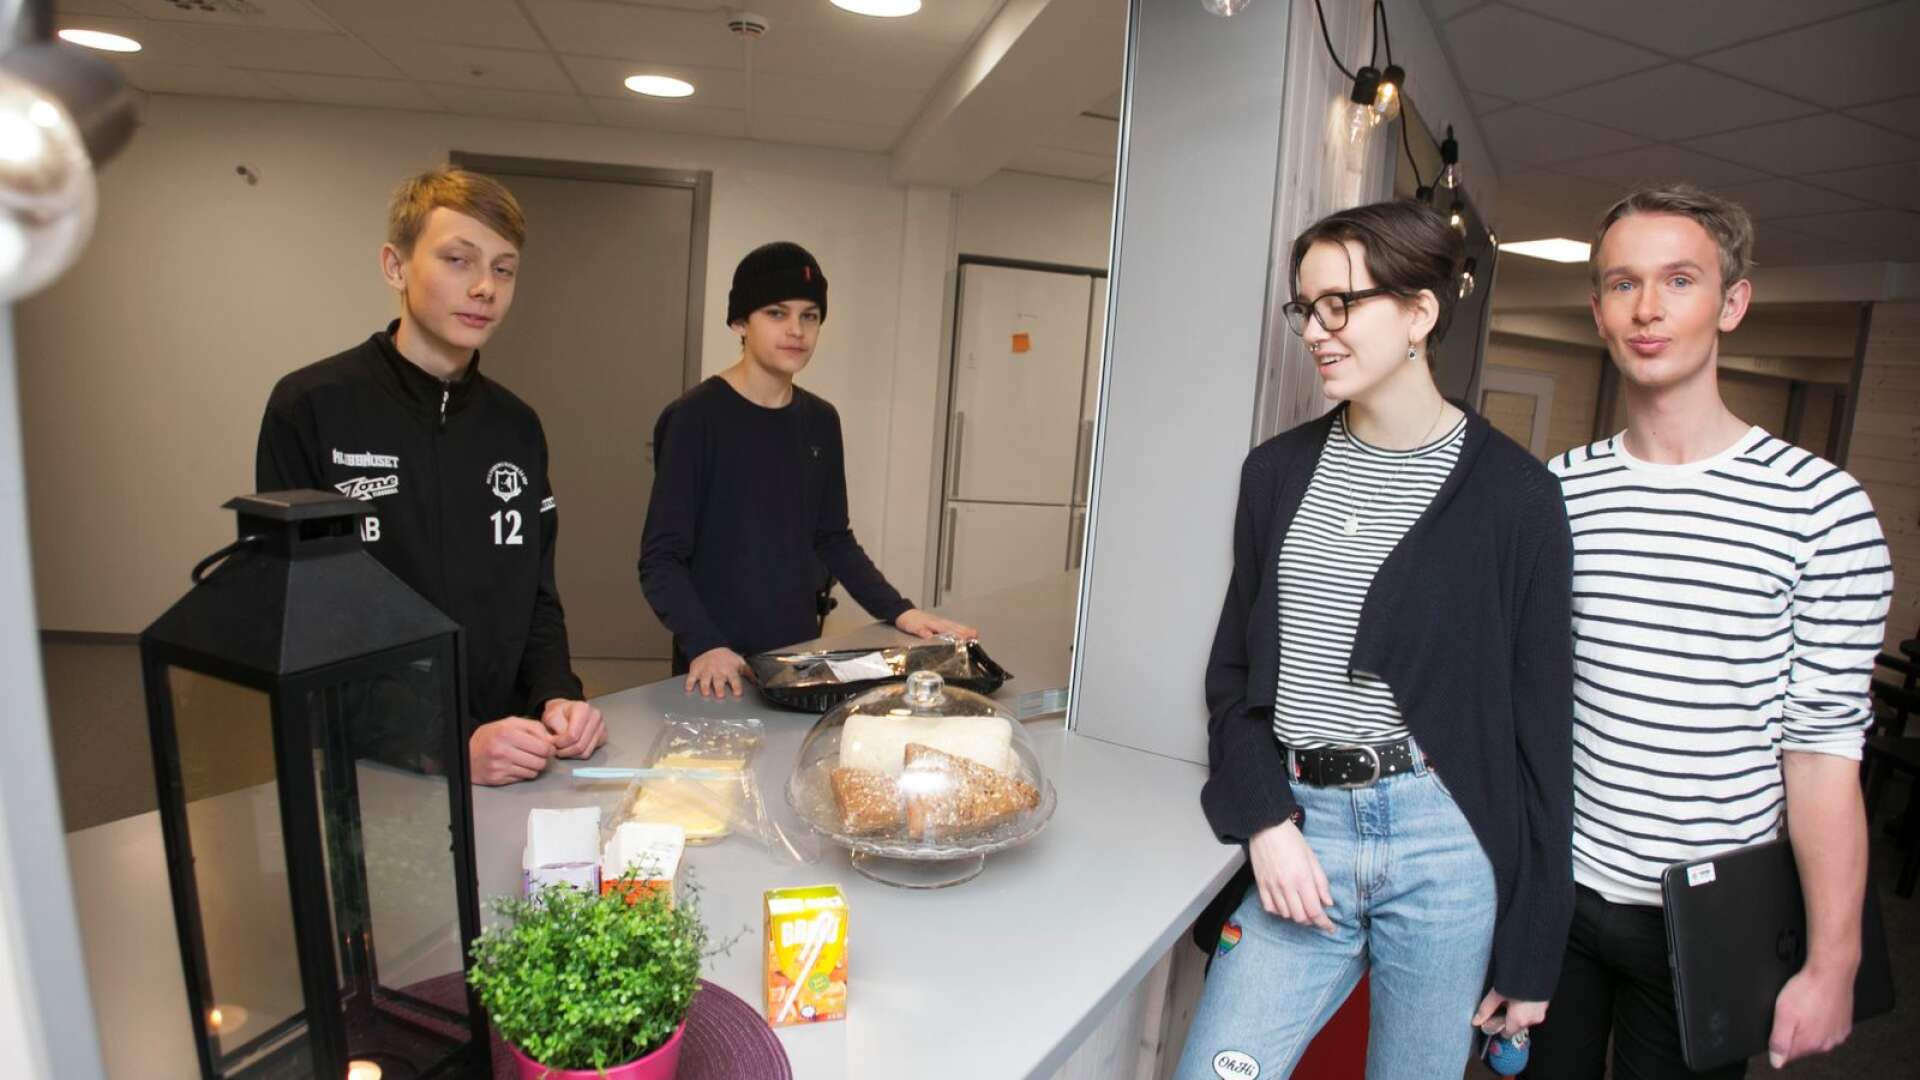 Axel Bergquist och Ivar Jones serverar Linnea Boström och William Lyrstrand frallor och festis i den nya cafeterian som är väldigt populär bland eleverna.